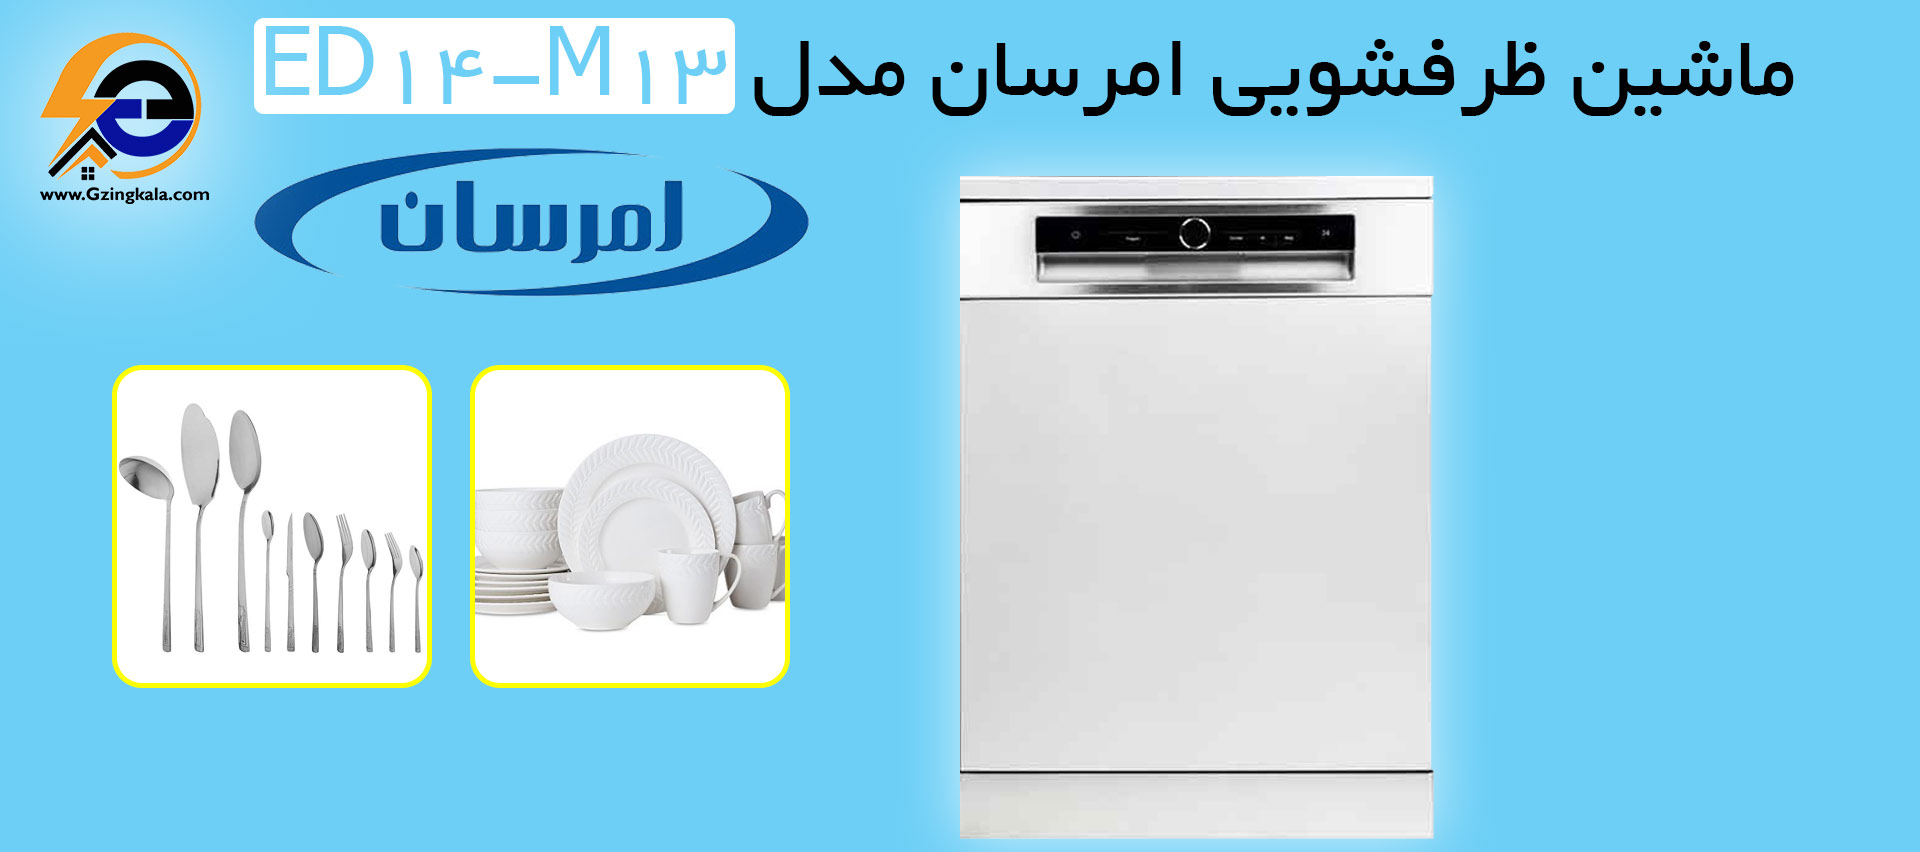 ماشین ظرفشویی امرسان مدل ED14-M13